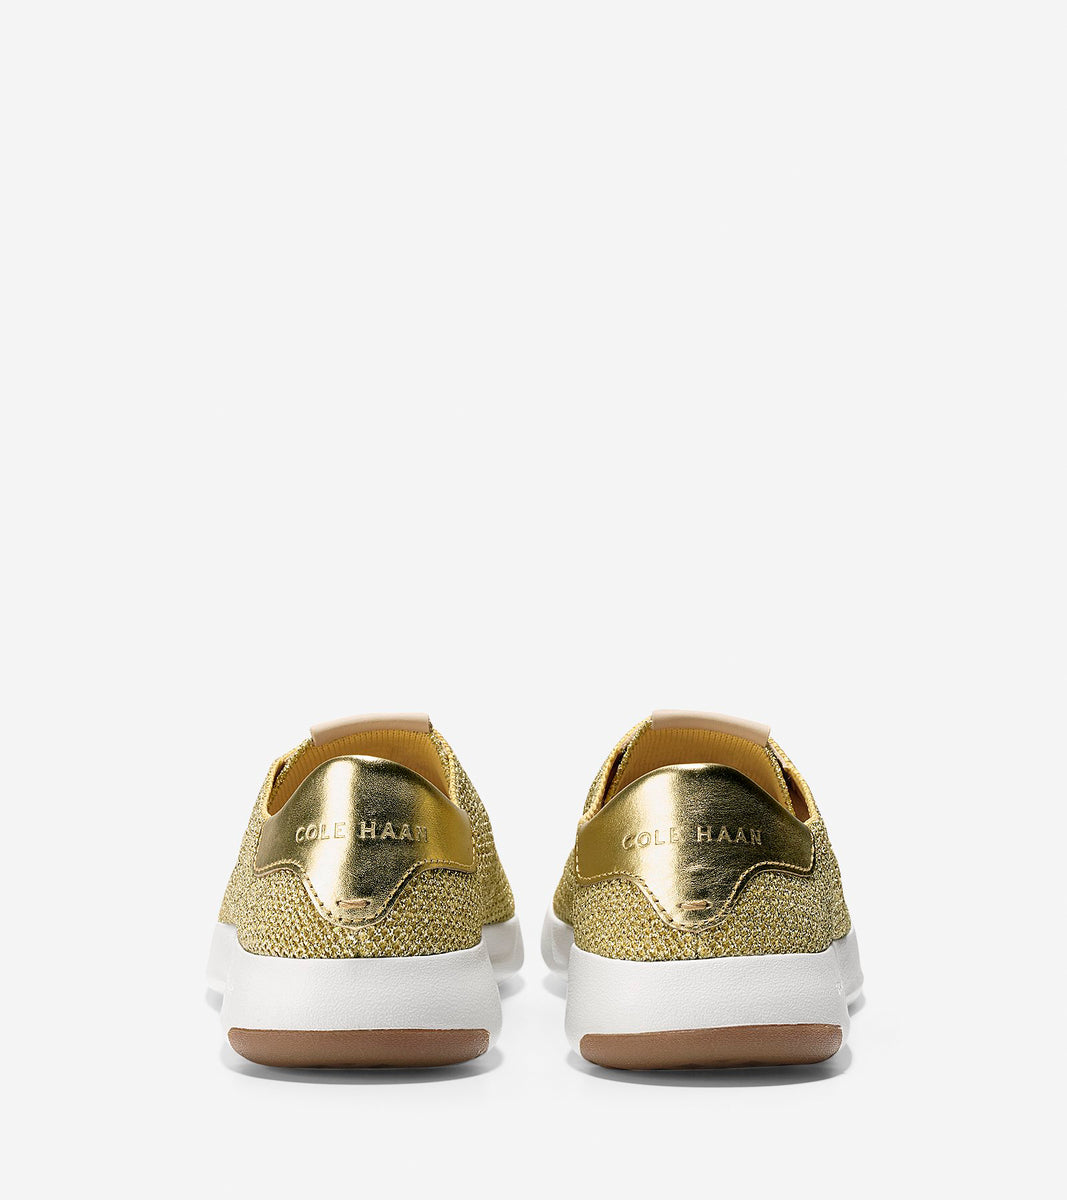 ColeHaan-GrandPrø Tennis Sneaker-w11242-Metallic Gold Knit